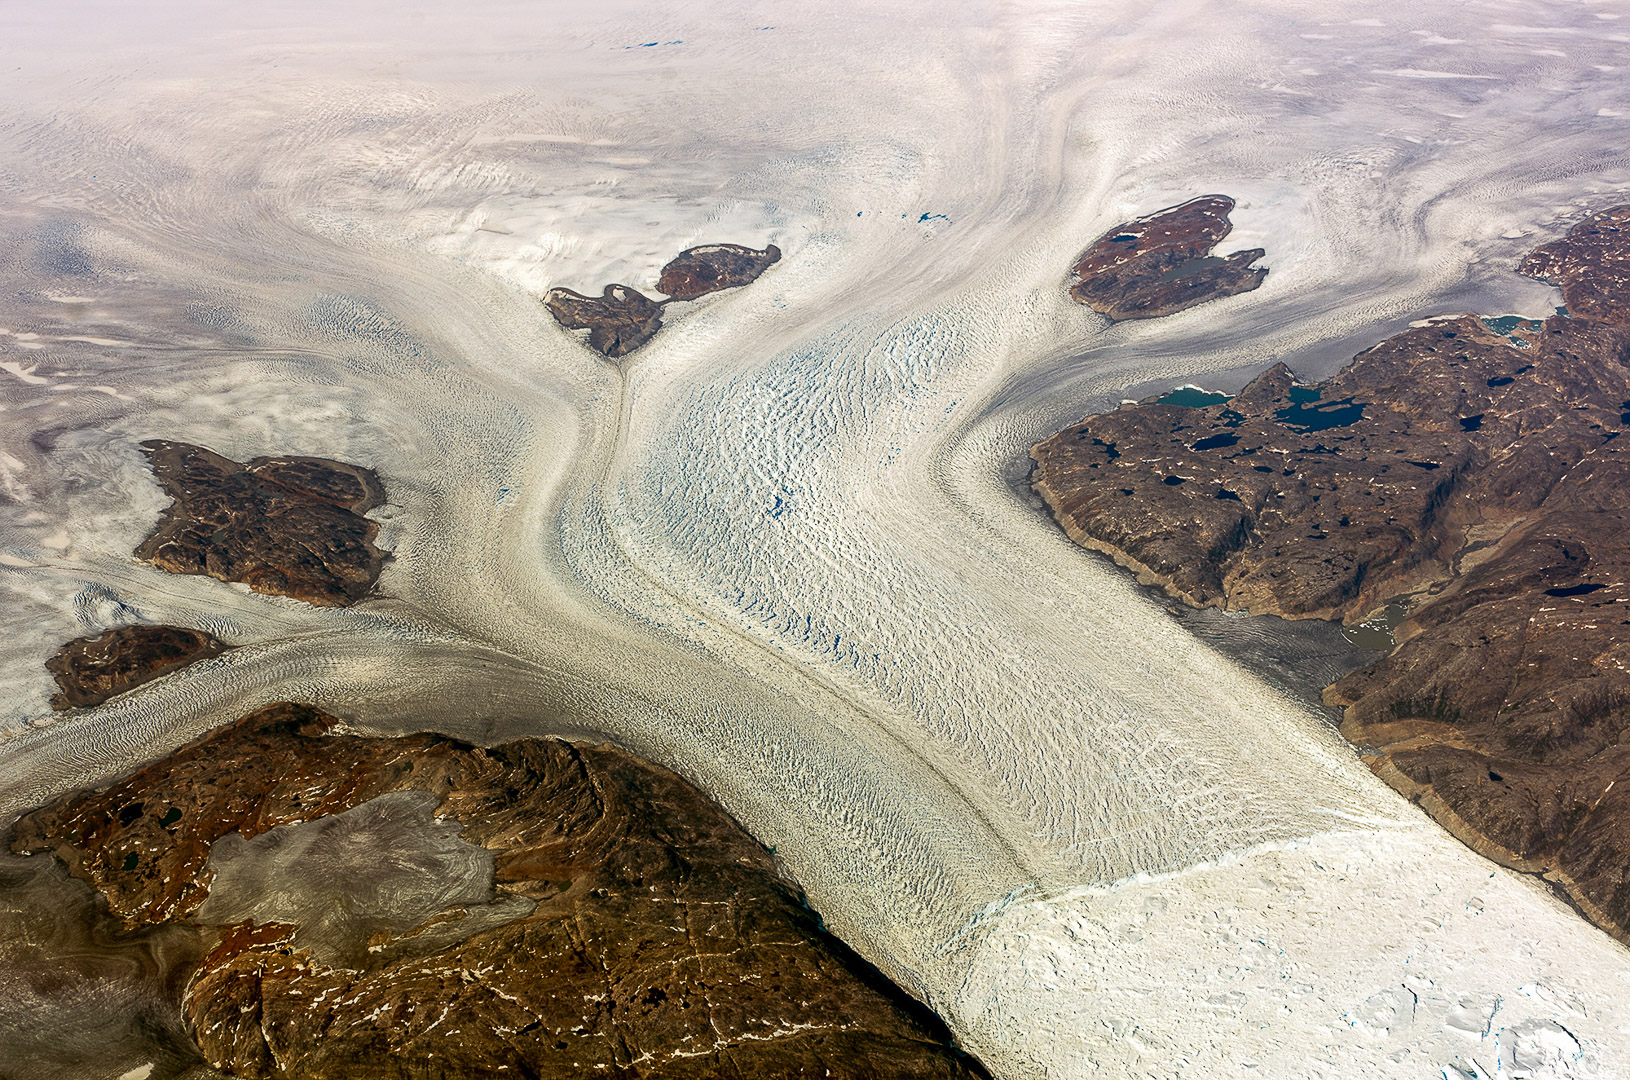 Glacier, Greenland, aerial image